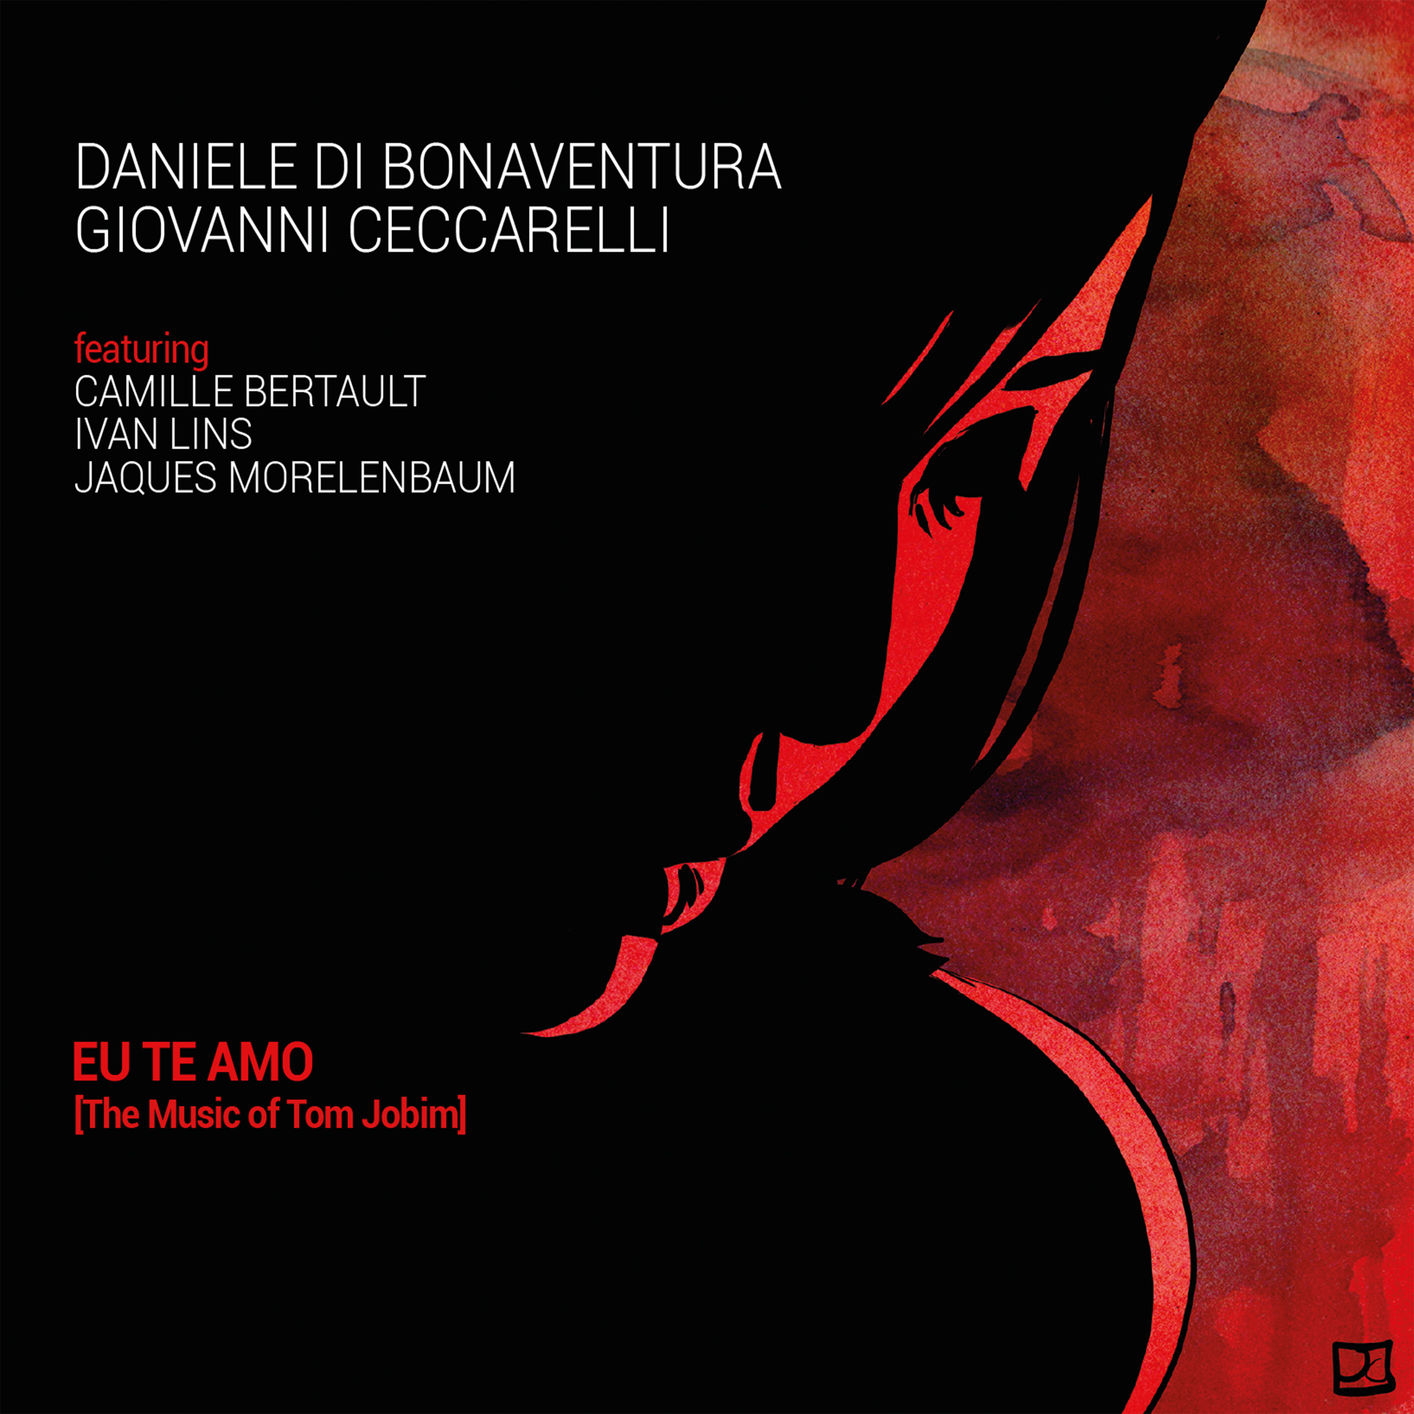 Daniele di Bonaventura & Giovanni Ceccarelli - Eu te amo (The Music of Tom Jobim) (2019) [FLAC 24bit/88,2kHz]